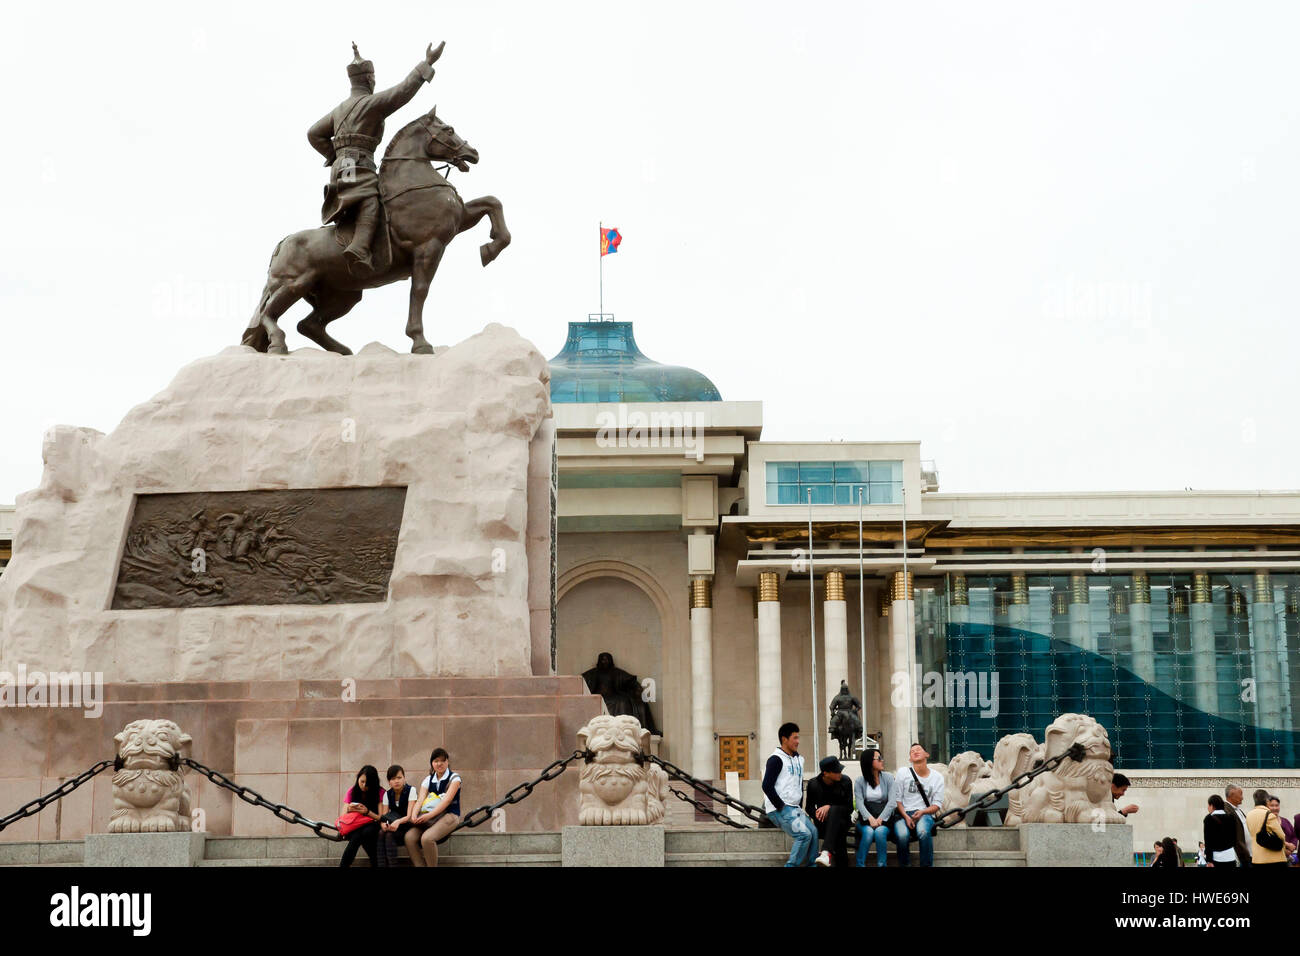 Oulan-bator, MONGOLIE - 10 mai 2012 : Statue de Damdin Sukhbaatar ; le membre fondateur de la partie mongole Banque D'Images